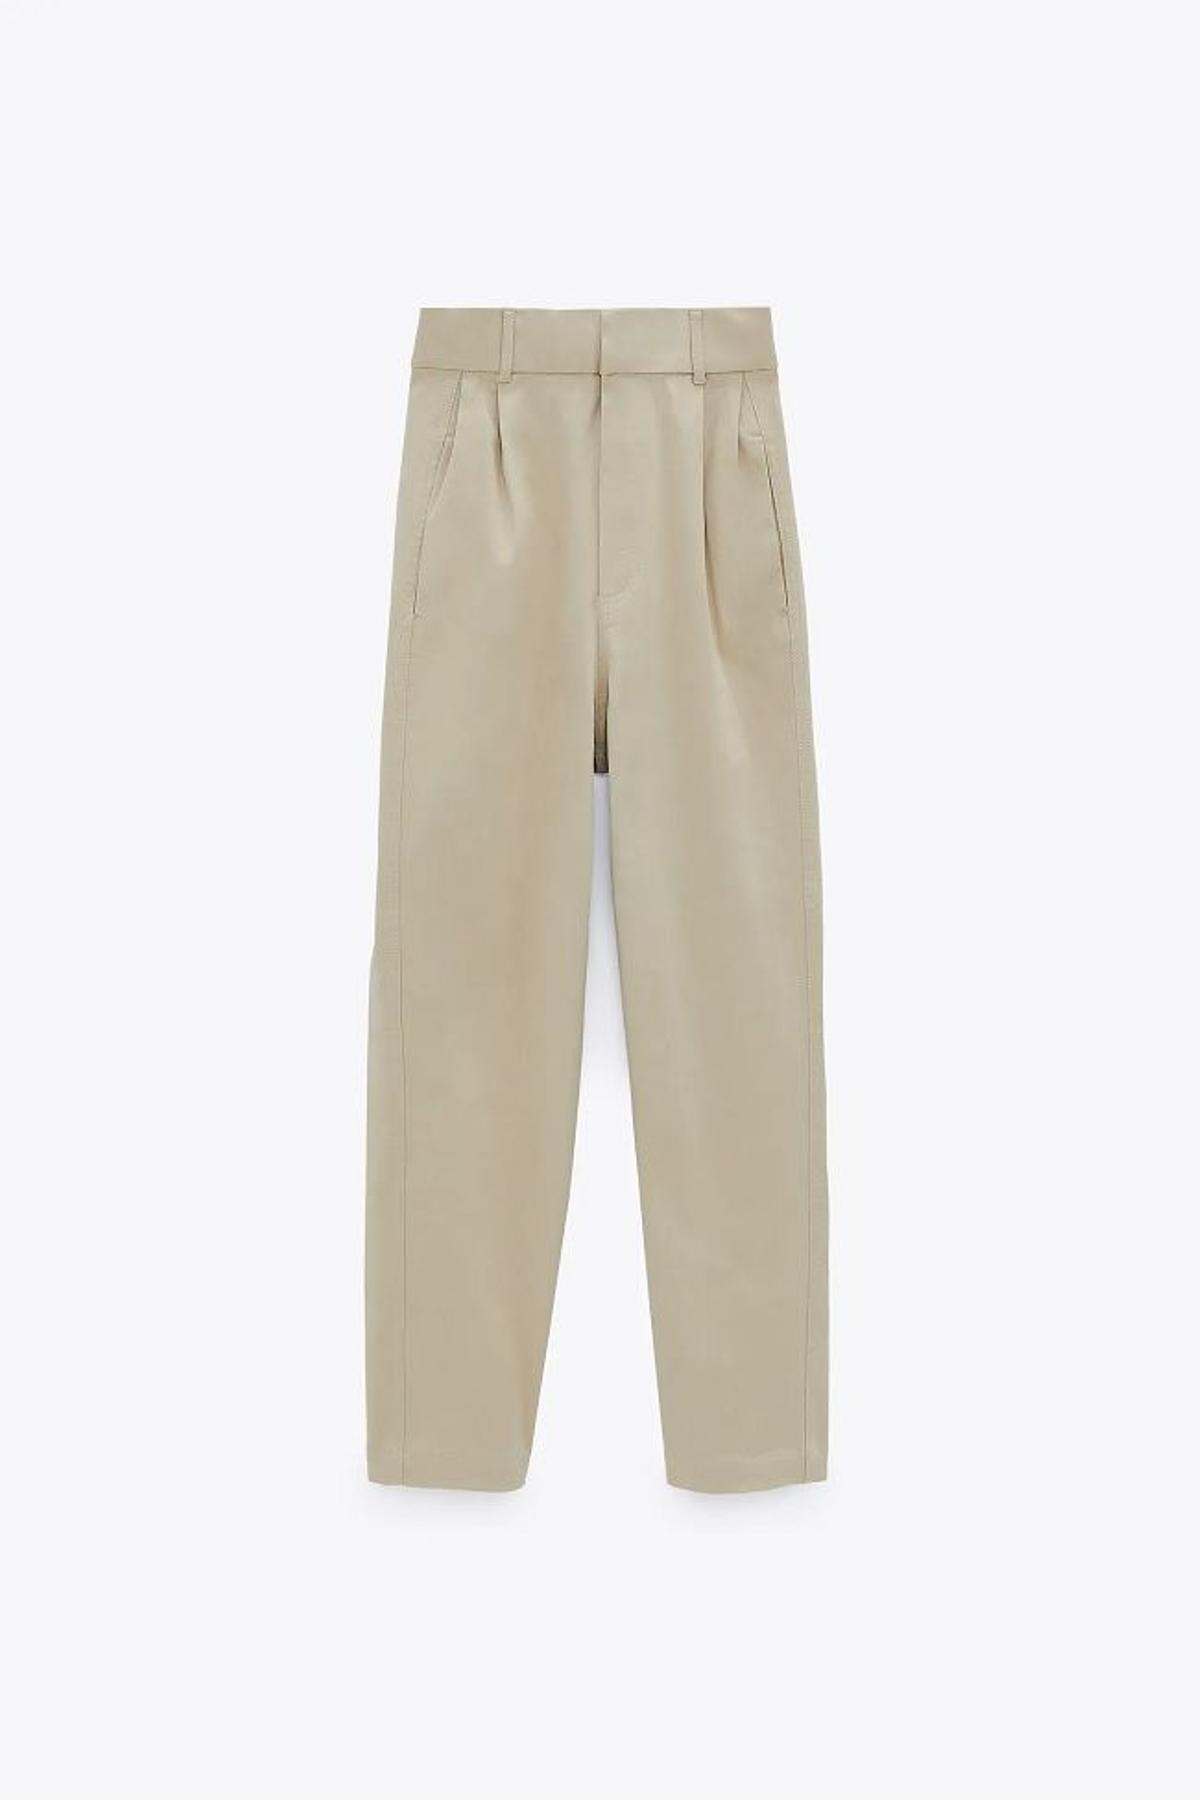 Pantalón de tiro alto de pinzas en color beige, de Zara